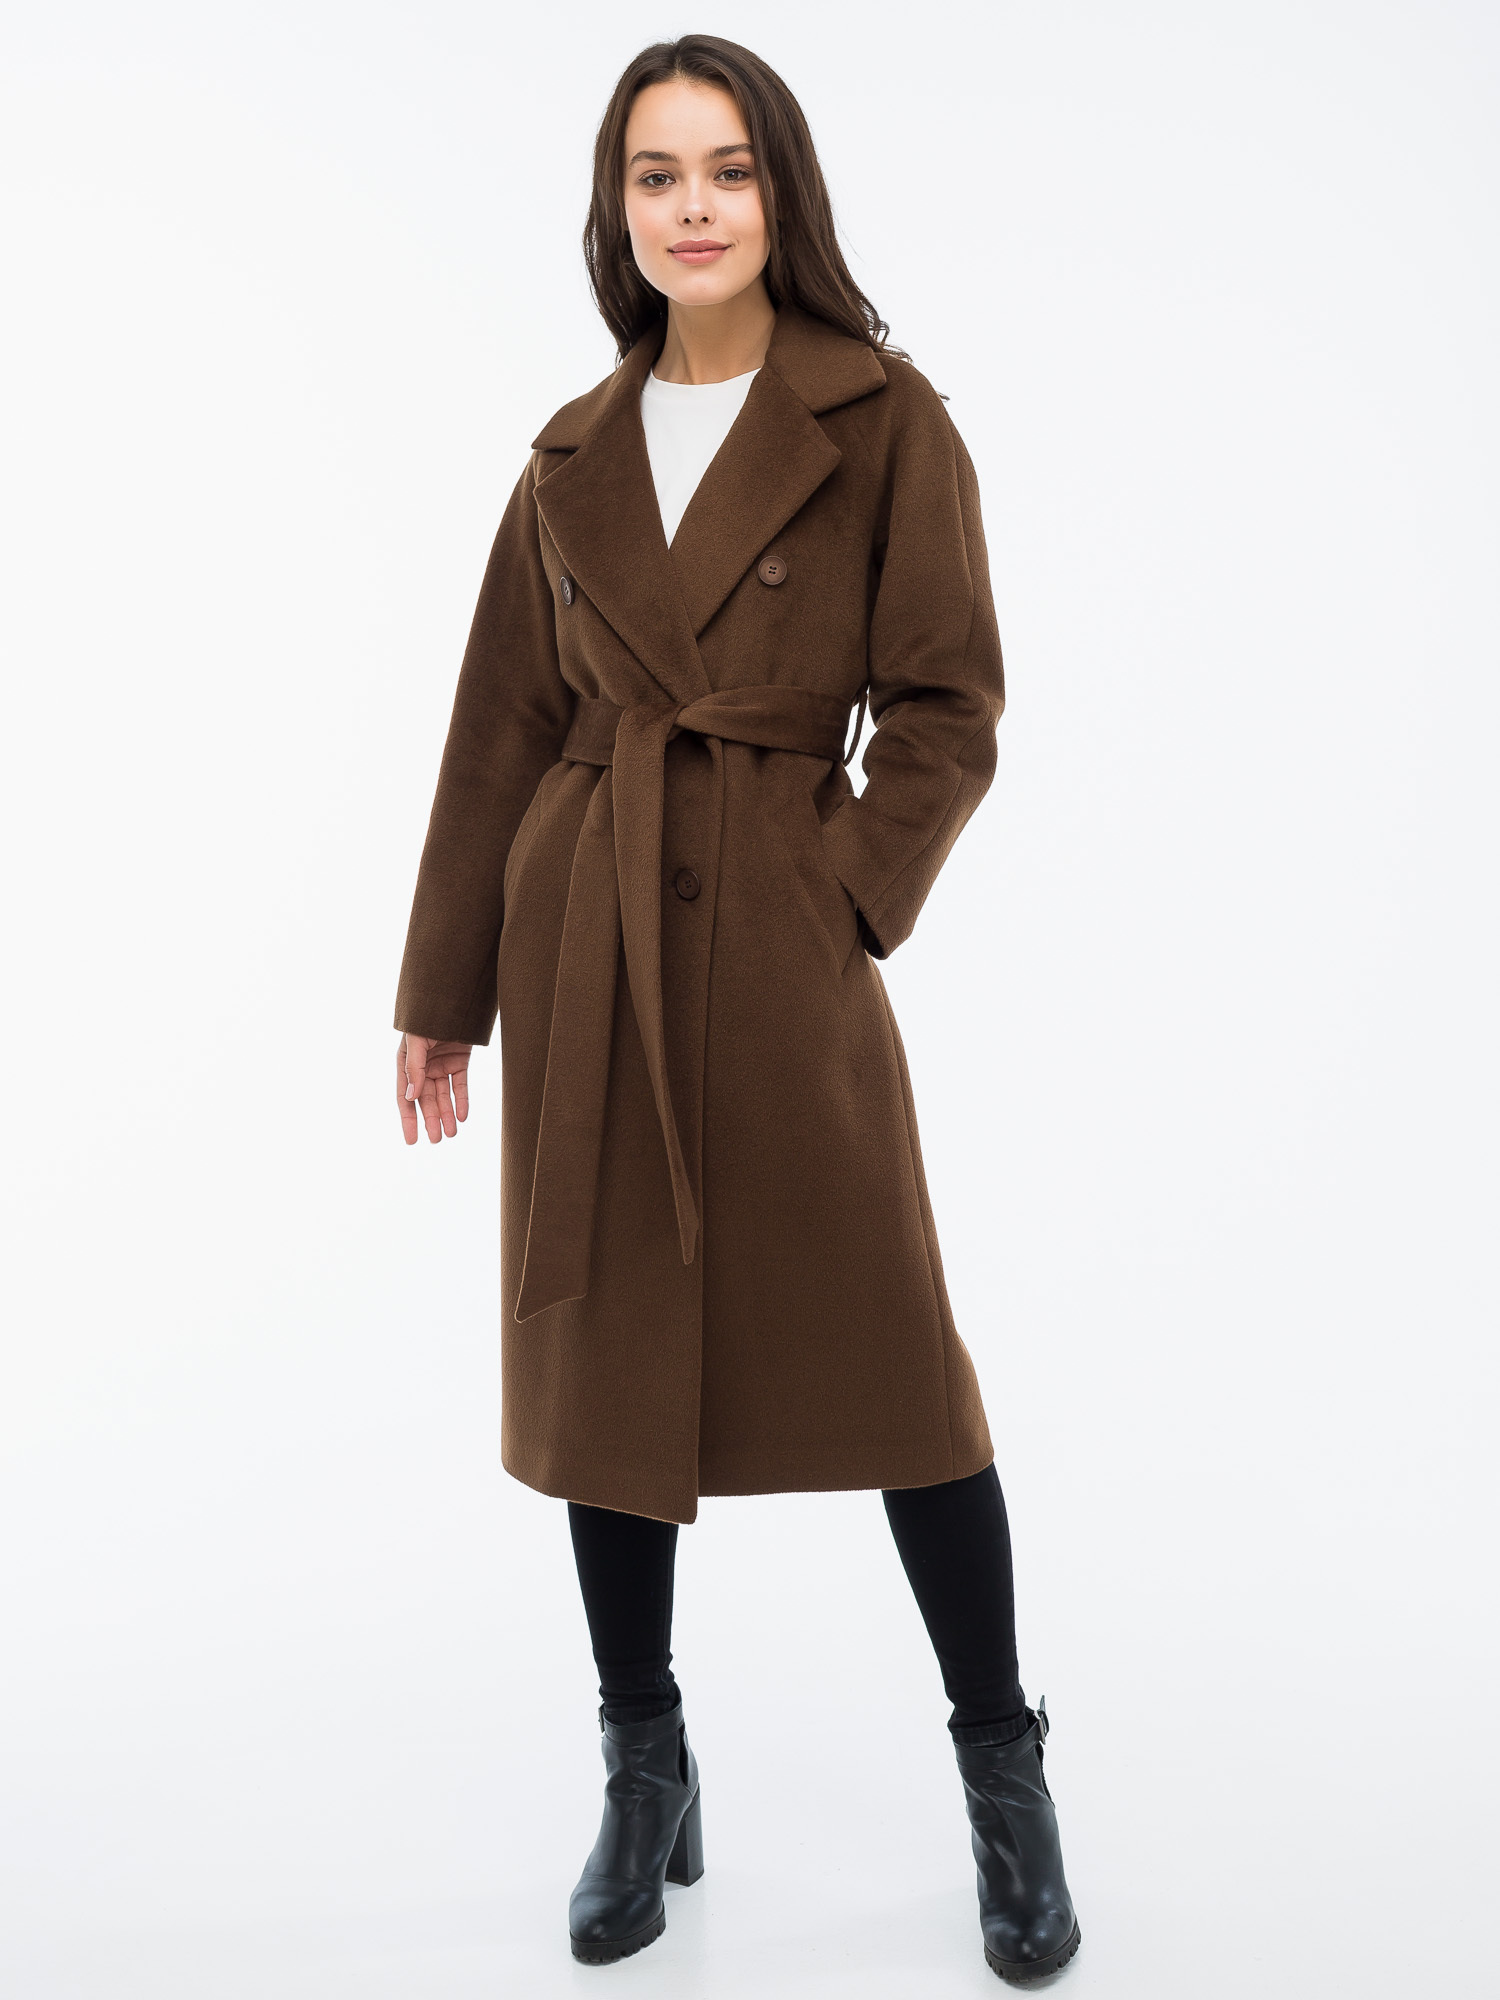 Купить коричневое пальто. Пальто Wolfstore. Турецкий длинный пальто коричневого цвета.